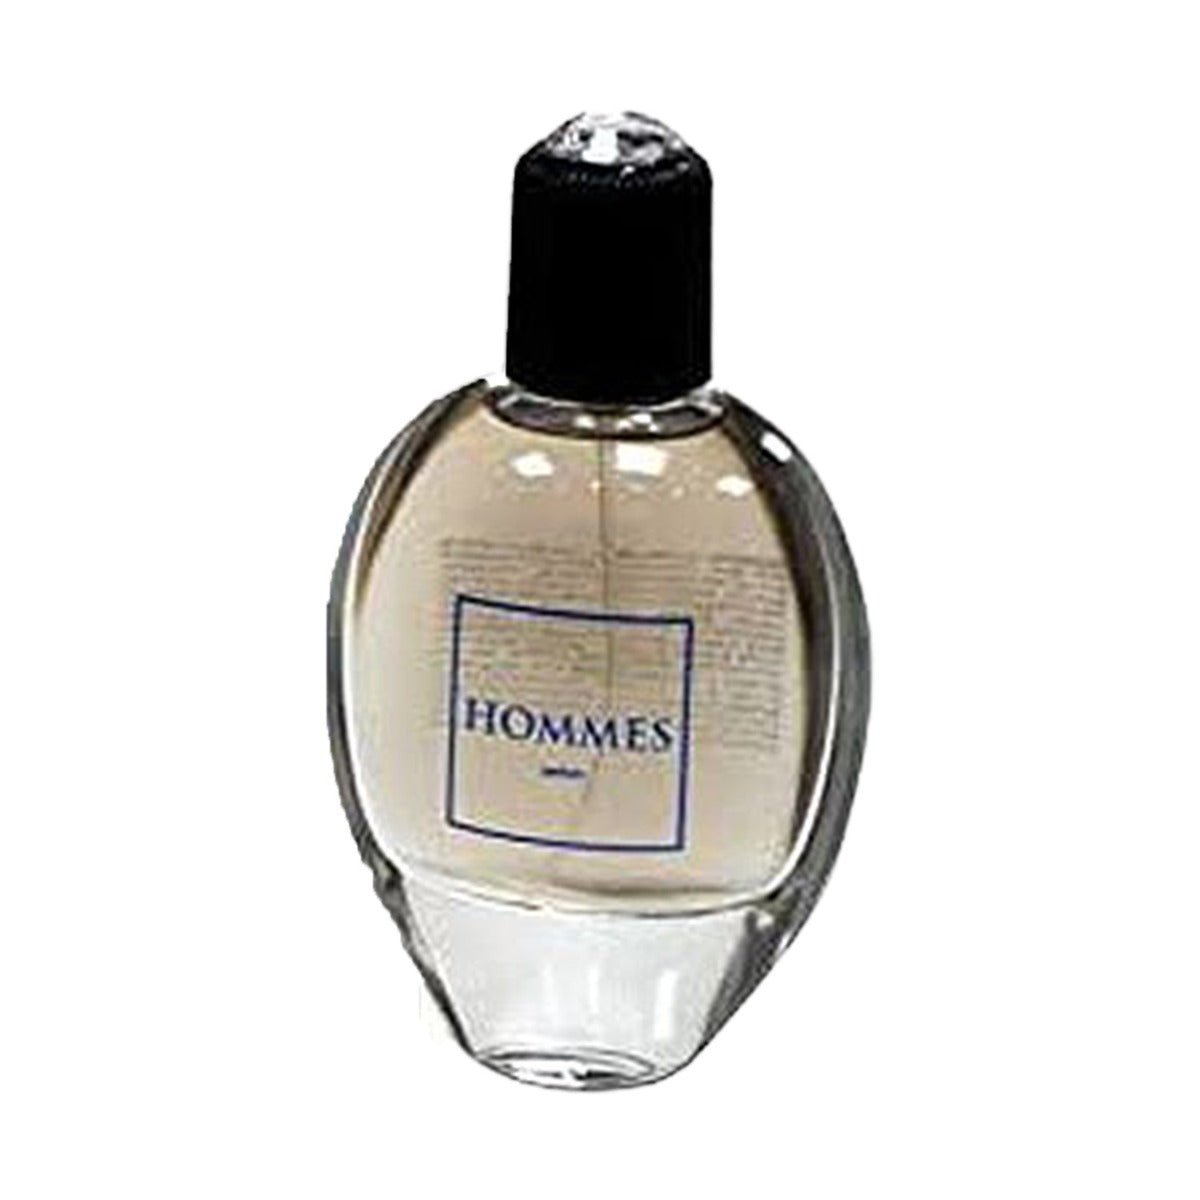 Dhamma Hommes Edp For Men100 ml-Perfume - AllurebeautypkDhamma Hommes Edp For Men100 ml-Perfume